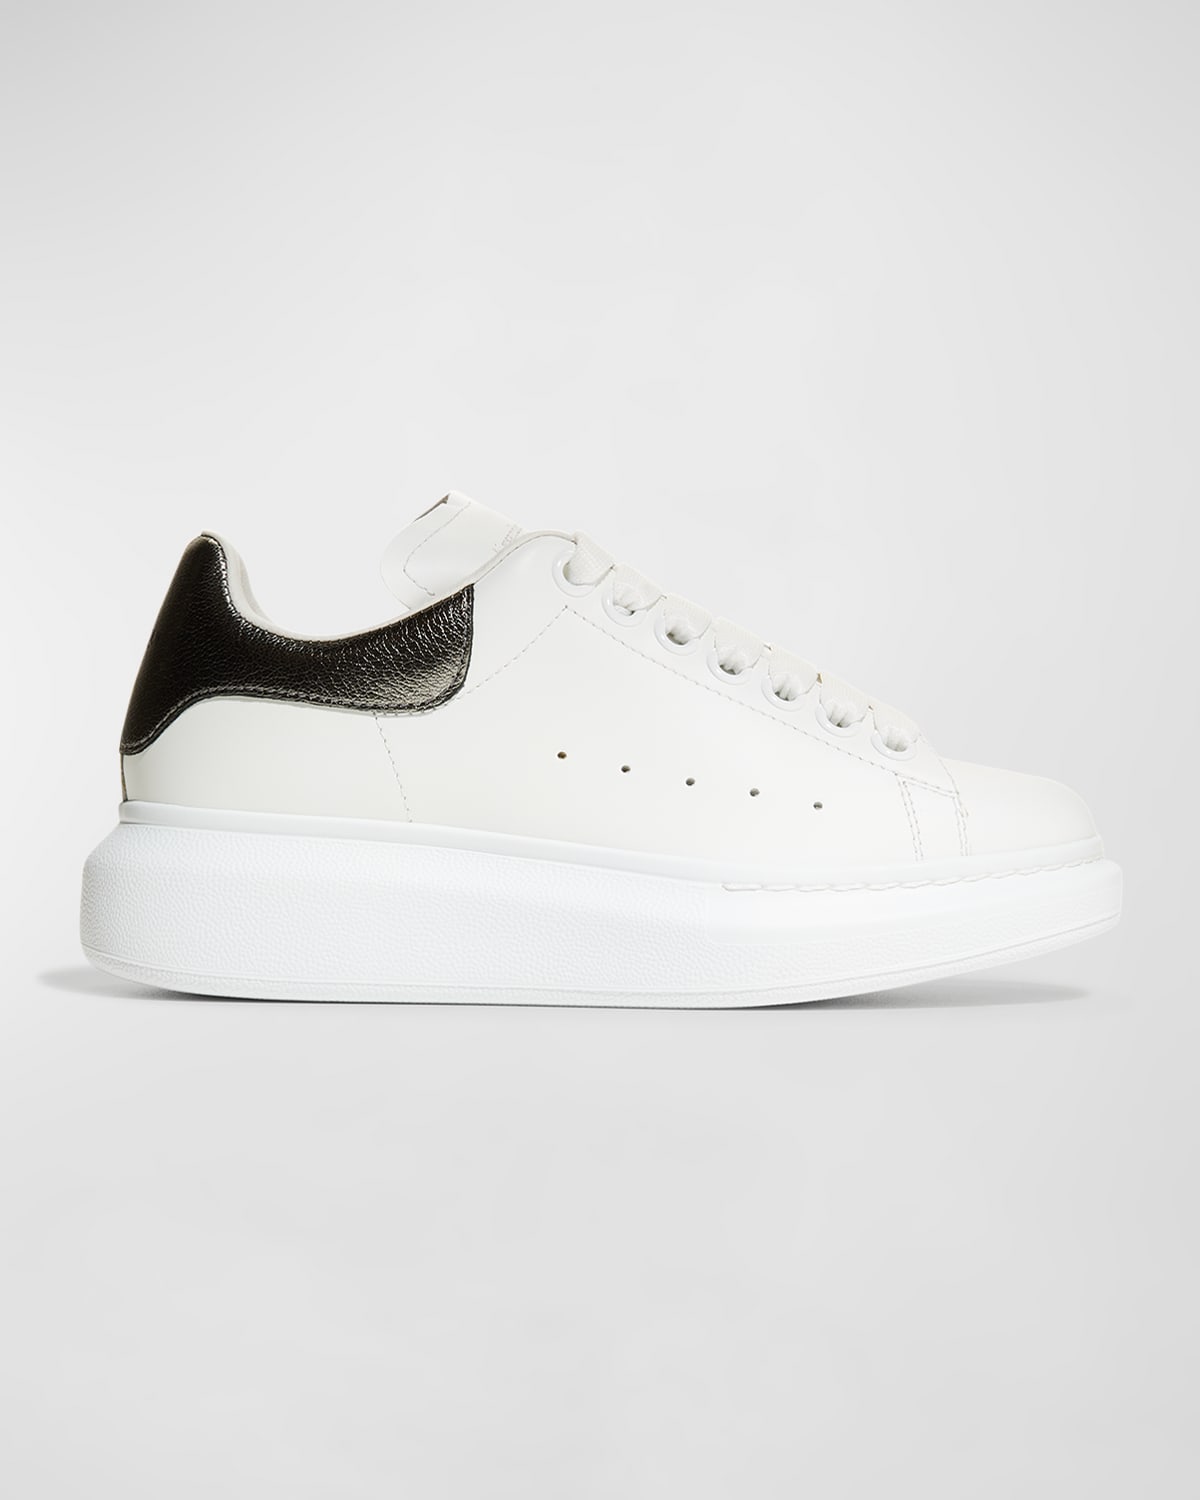 Alexander Mcqueen White Sneakers | Neiman Marcus